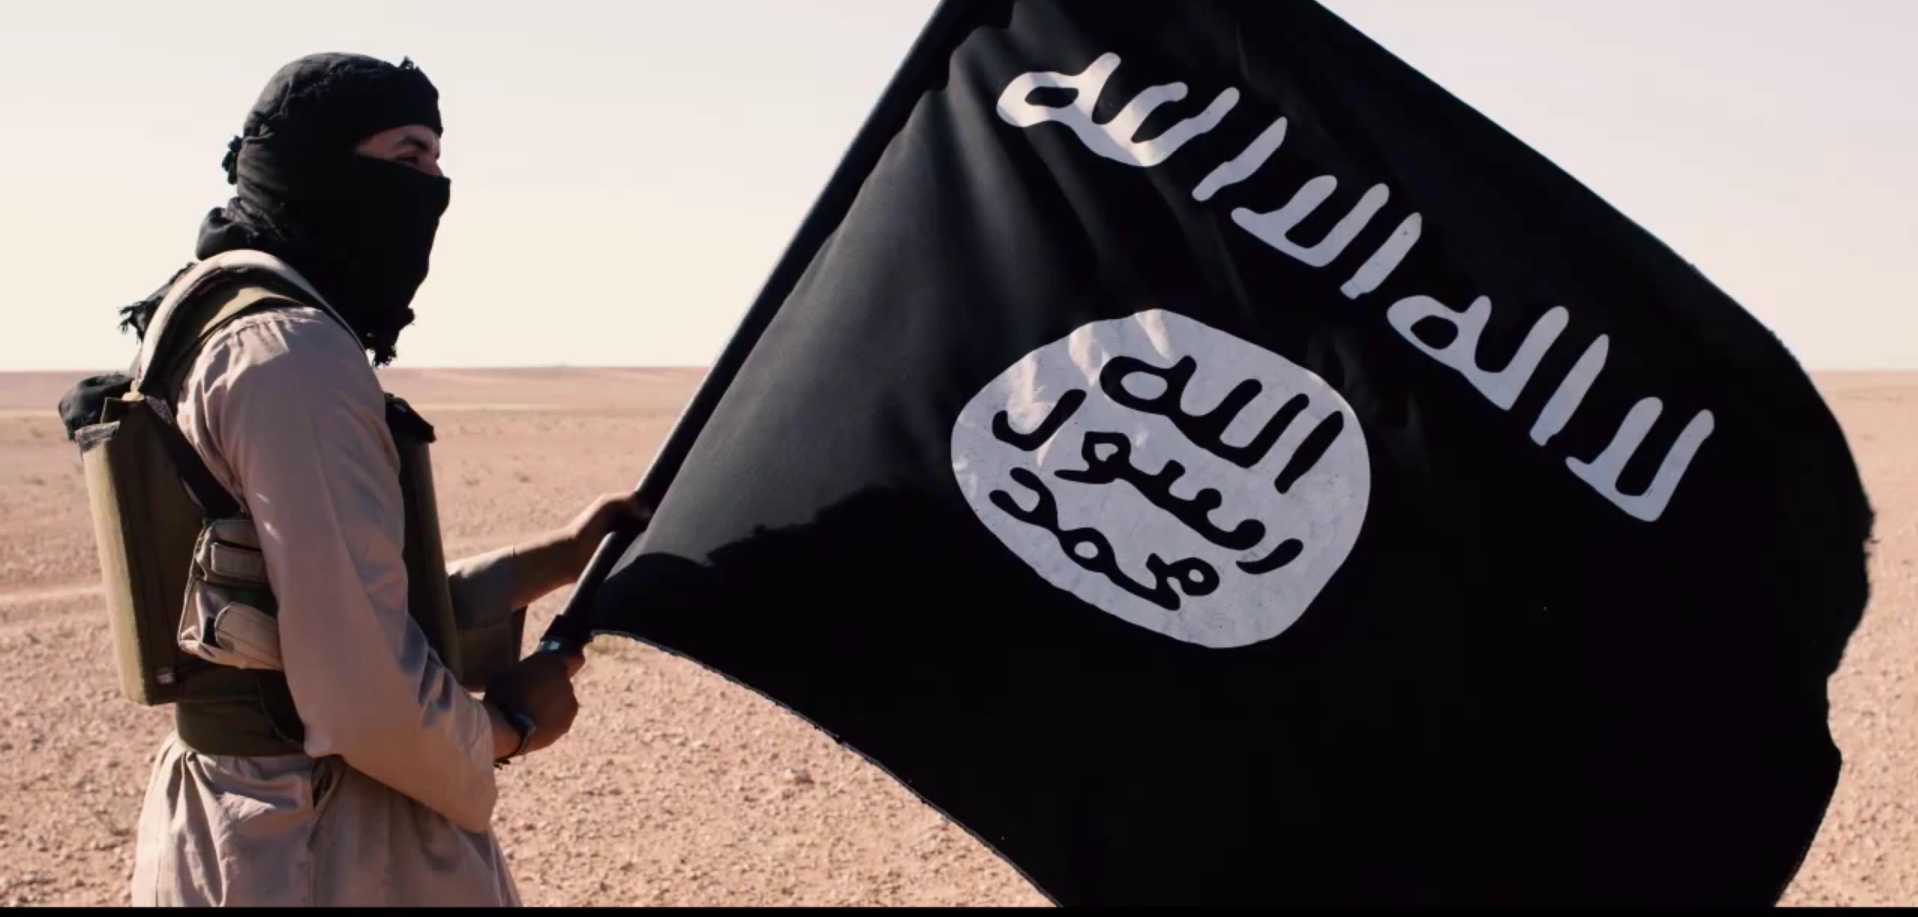 Игил википедия расшифровка. Флаг ИГИЛ. Исламское государство террористическая организация флаг.